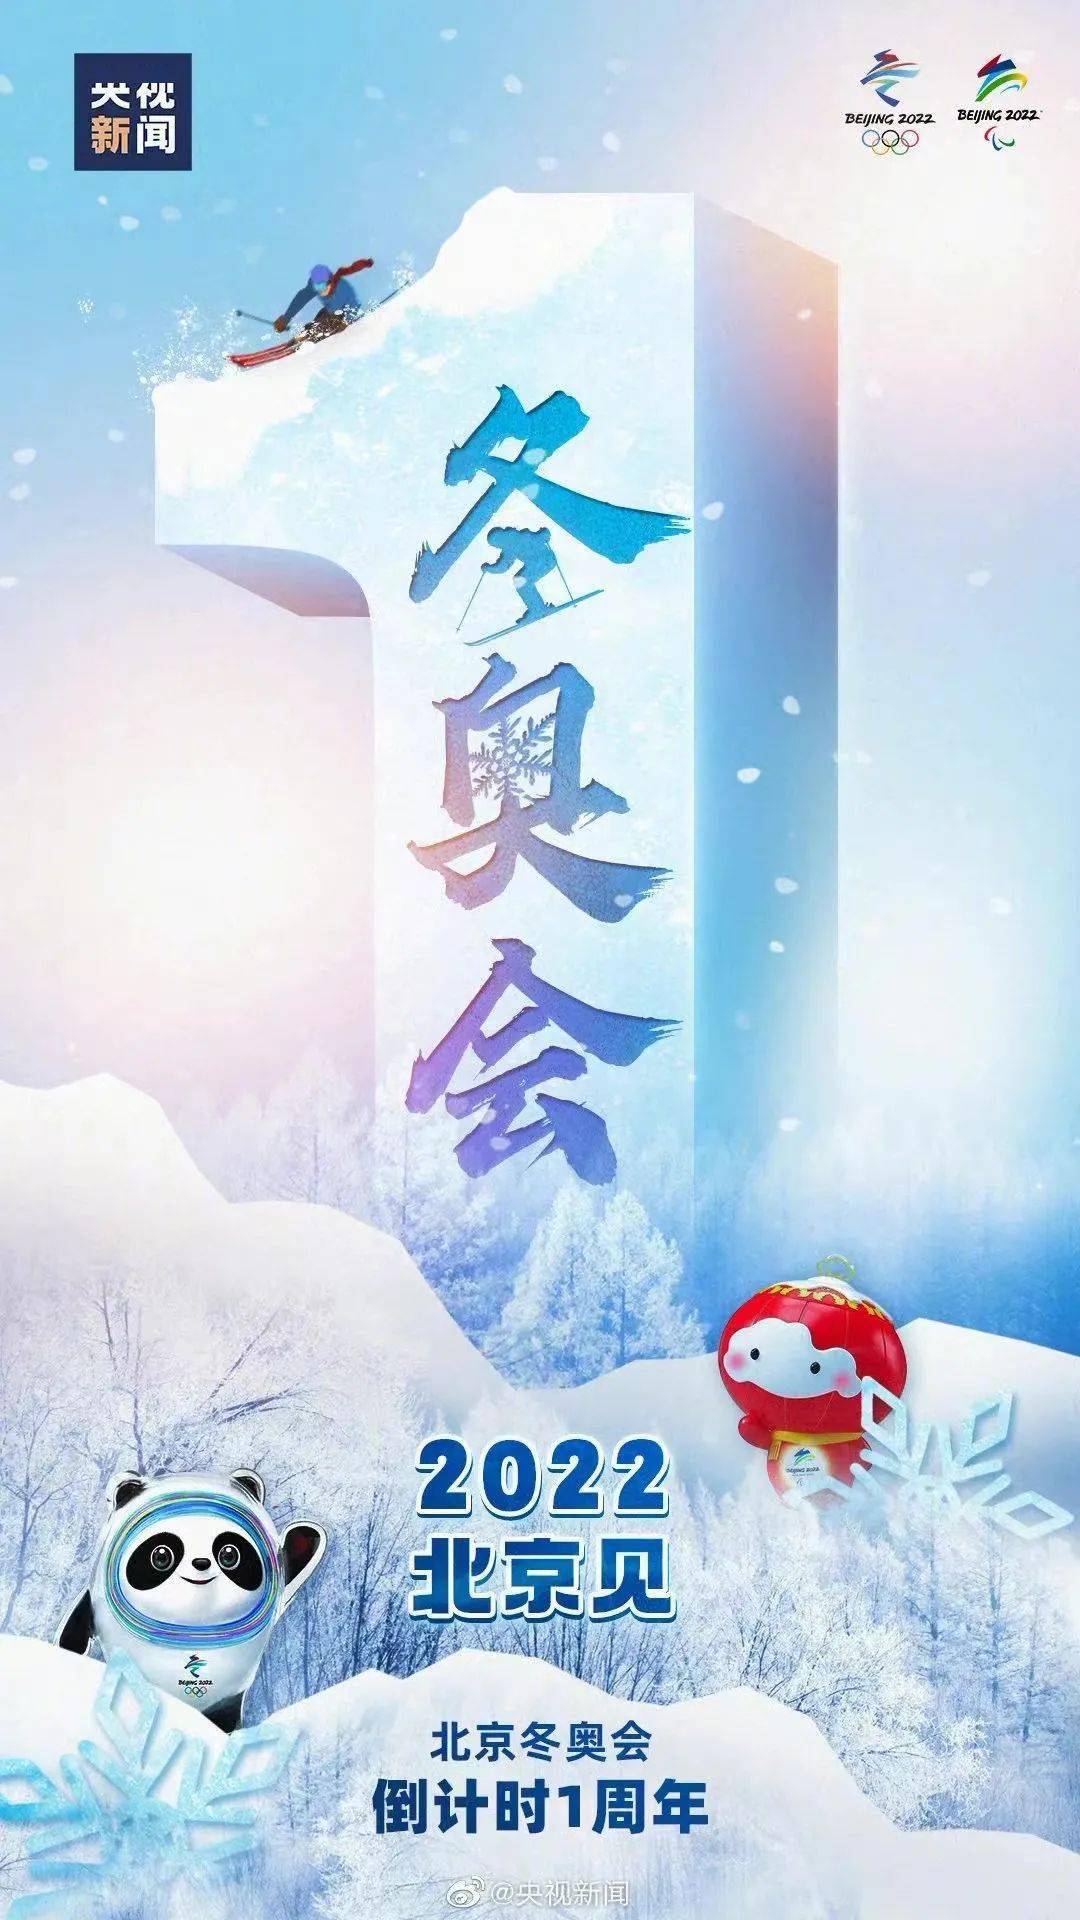 毕竟  如果没有掌握好平衡 2021年2月4日 在冬奥会带动3亿人参与冰雪